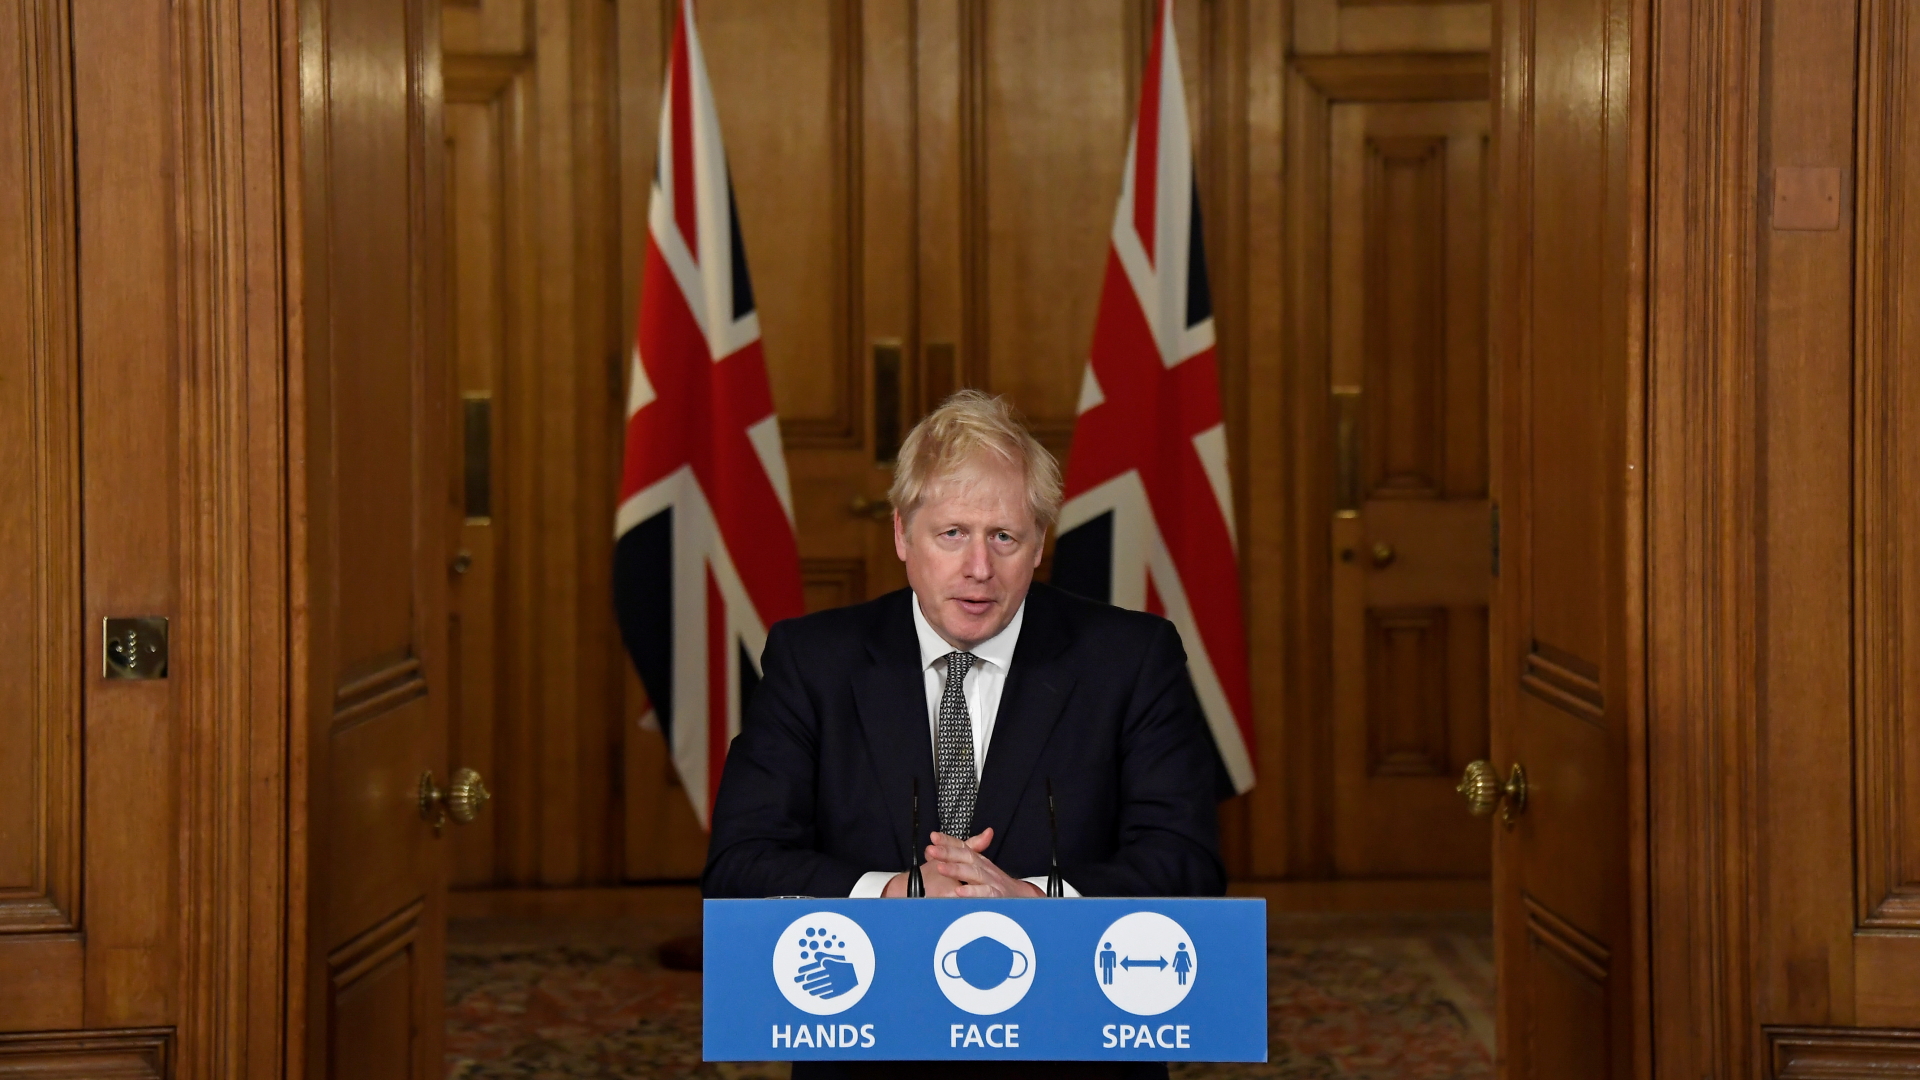 Der britische Premier Johnson verkündet bei einer Pressekonferenz in London neue Corona-Maßnahmen. | REUTERS